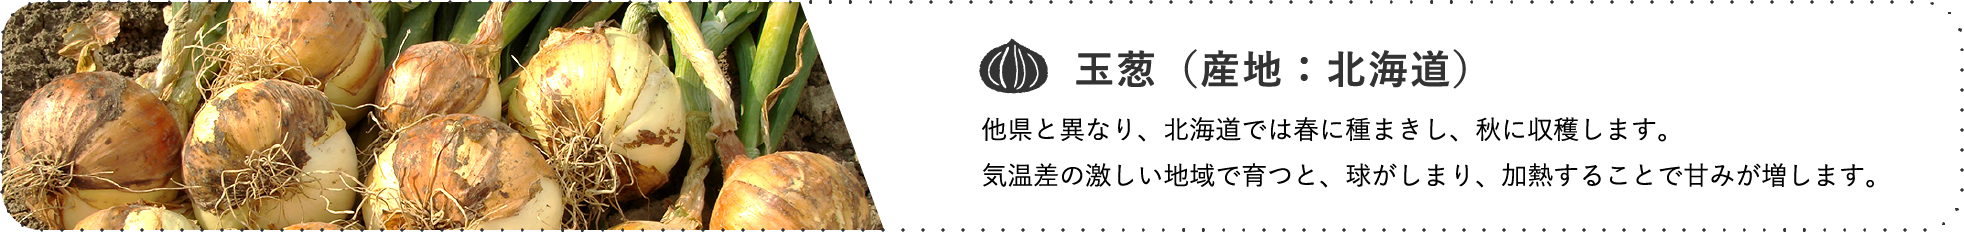 玉葱（産地：北海道） / 他県と異なり、北海道では春に種まきし、秋に収穫します。気温差の激しい地域で育つと、球がしまり、加熱することで甘みが増します。